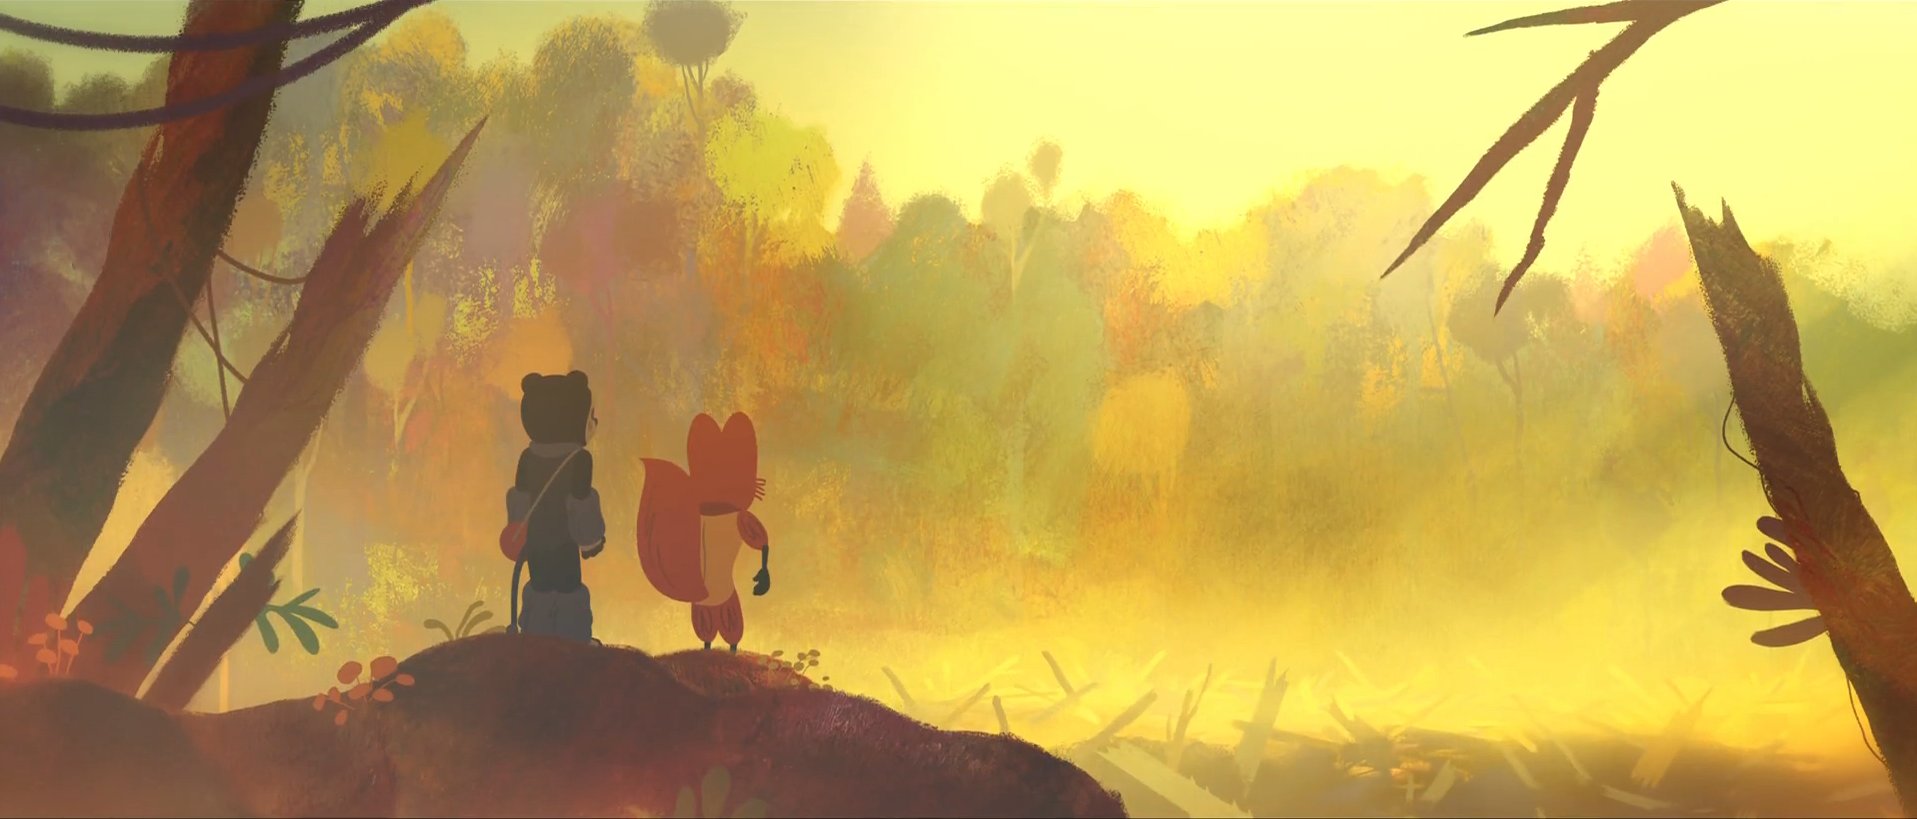 Cena do filme animado Perlimps. A cena mostra o urso e a raposa olhando para o horizonte, de costas para a imagem. A imagem tem muitos tons de amarelo e marrom, mostrando uma paisagem fosca e não nítida. 